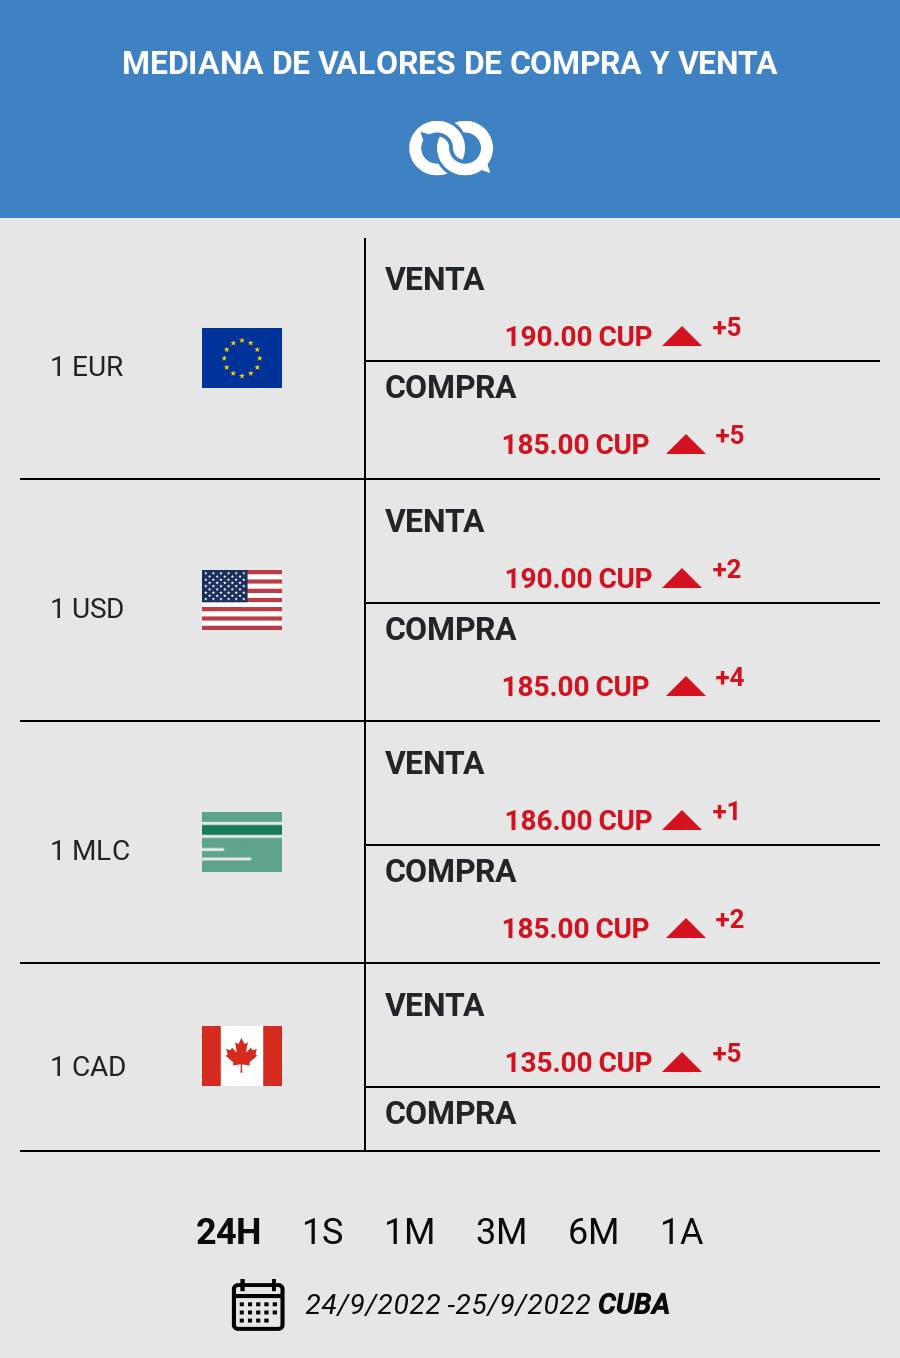 Tasa representativa del mercado informal de divisas en Cuba. Fuente: El Toque